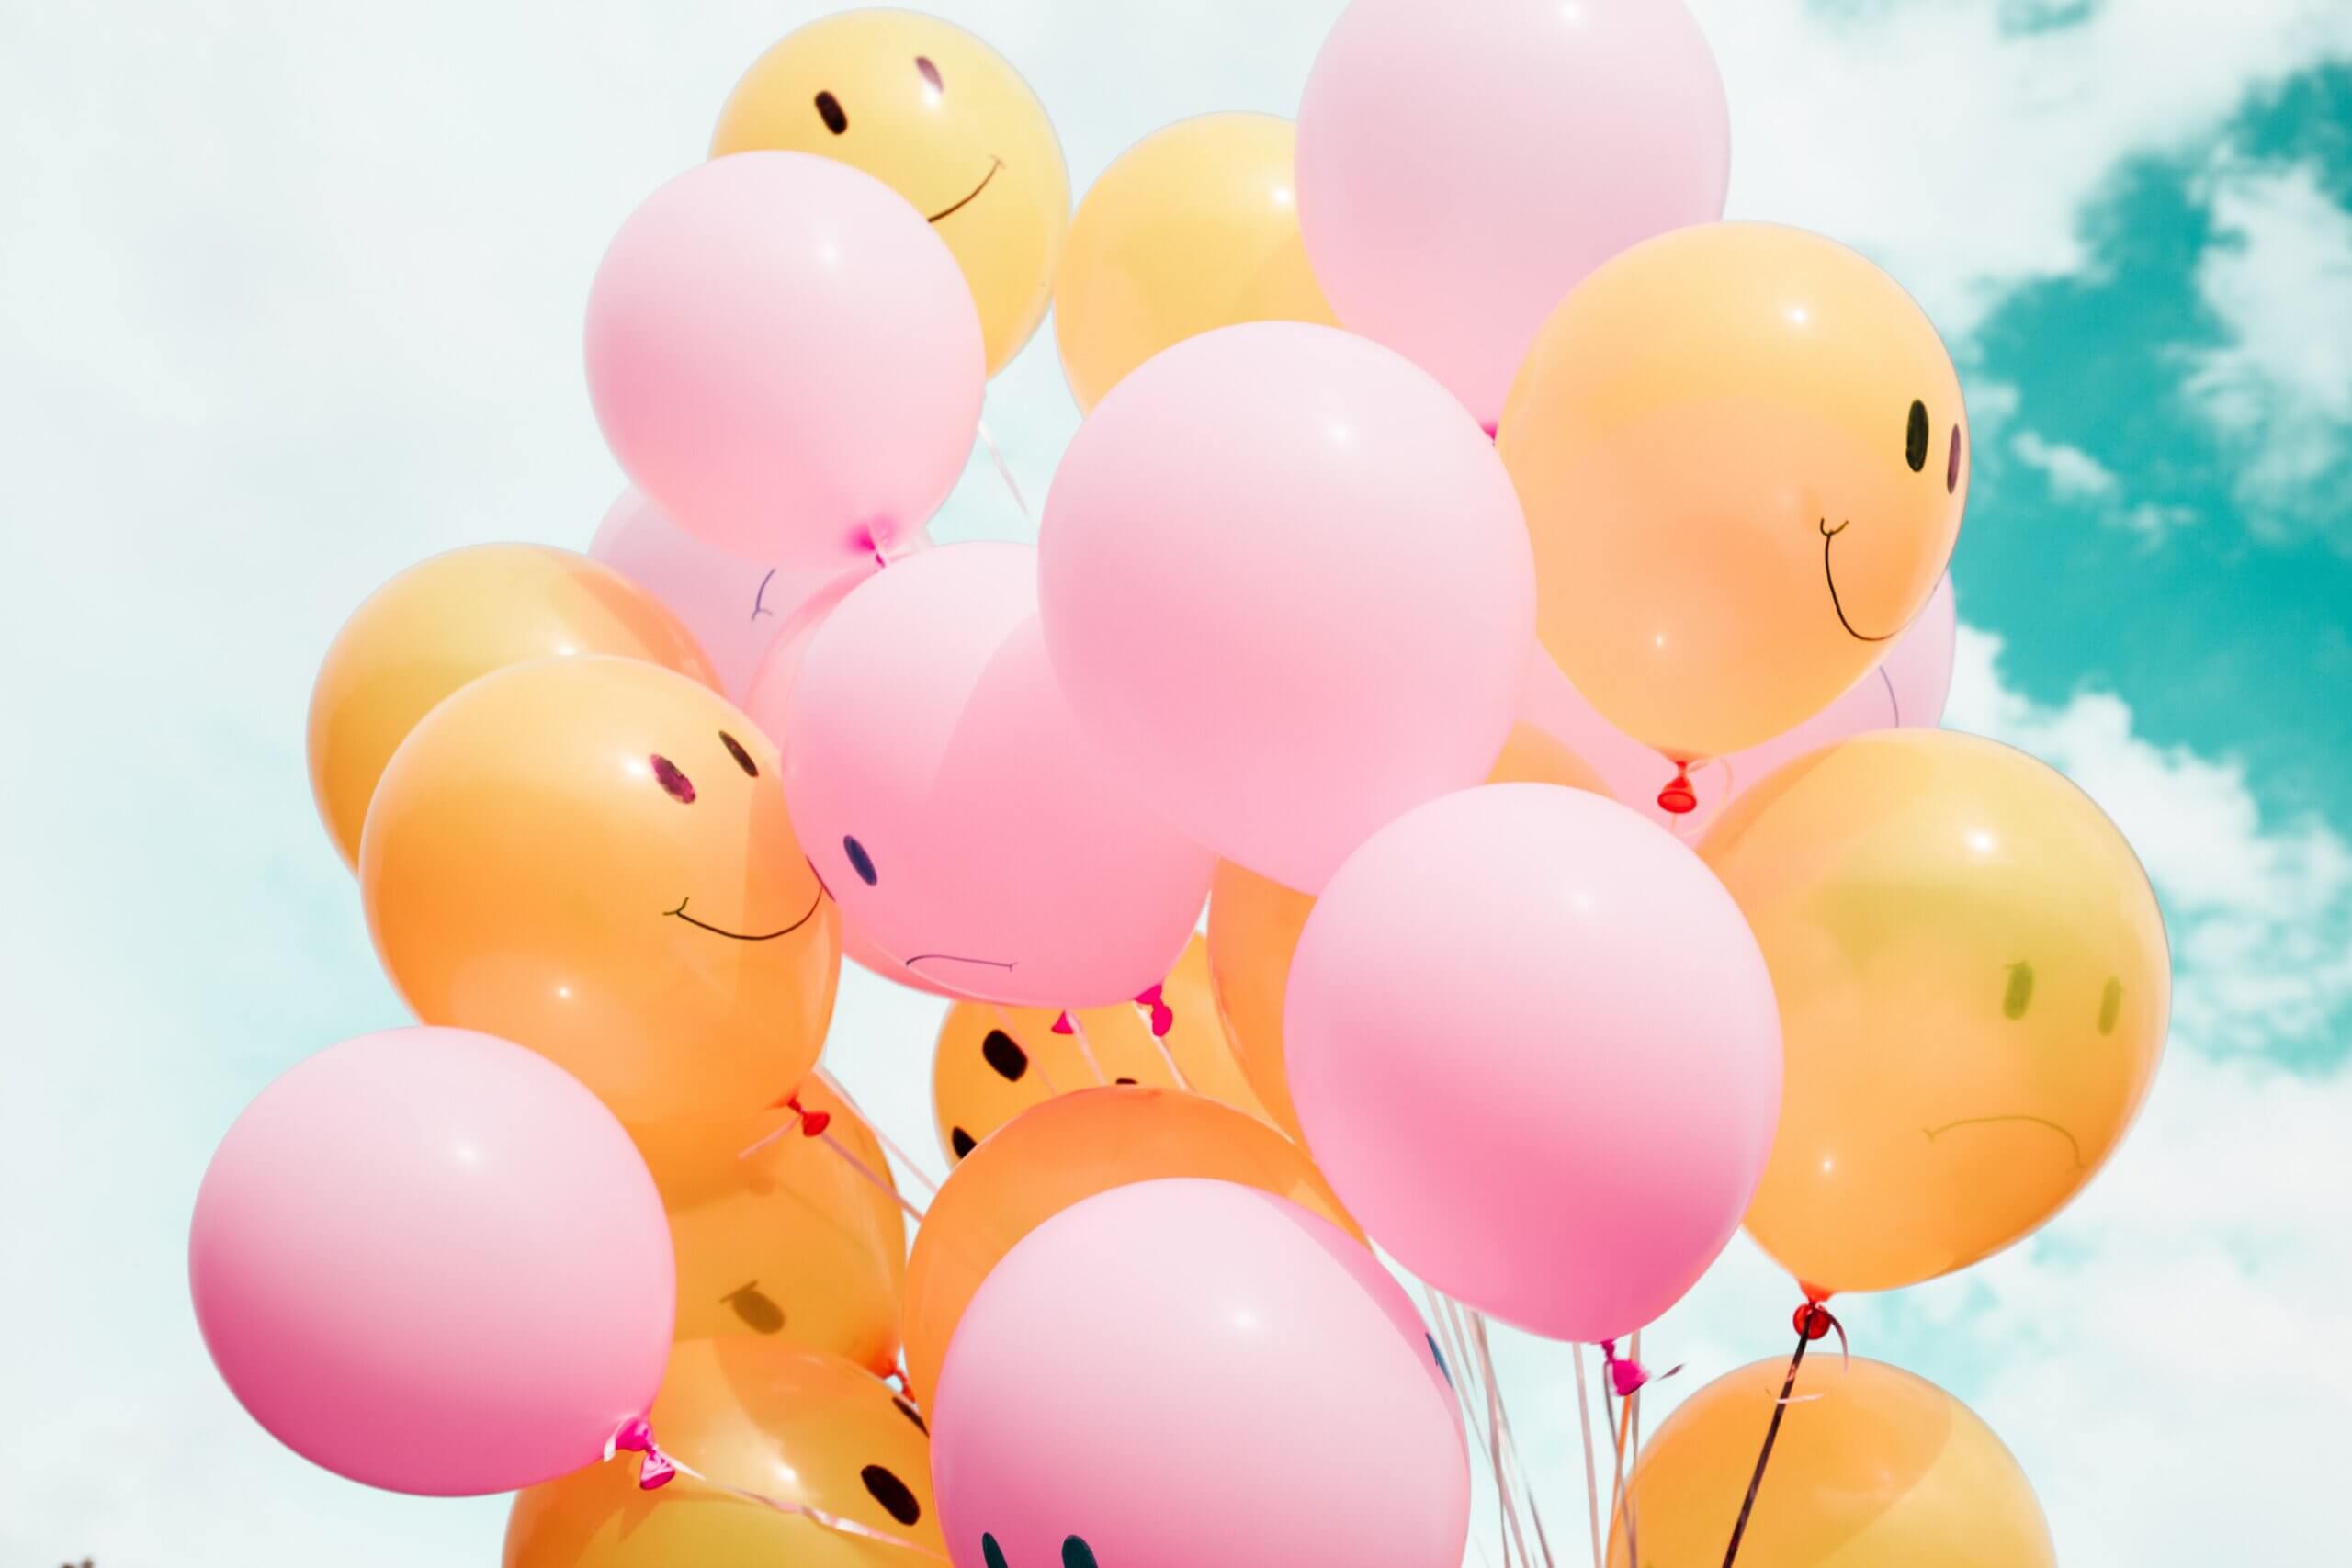 Plusieurs ballons de couleur rose et orange avec un sourire dessiné dessus, dans le ciel